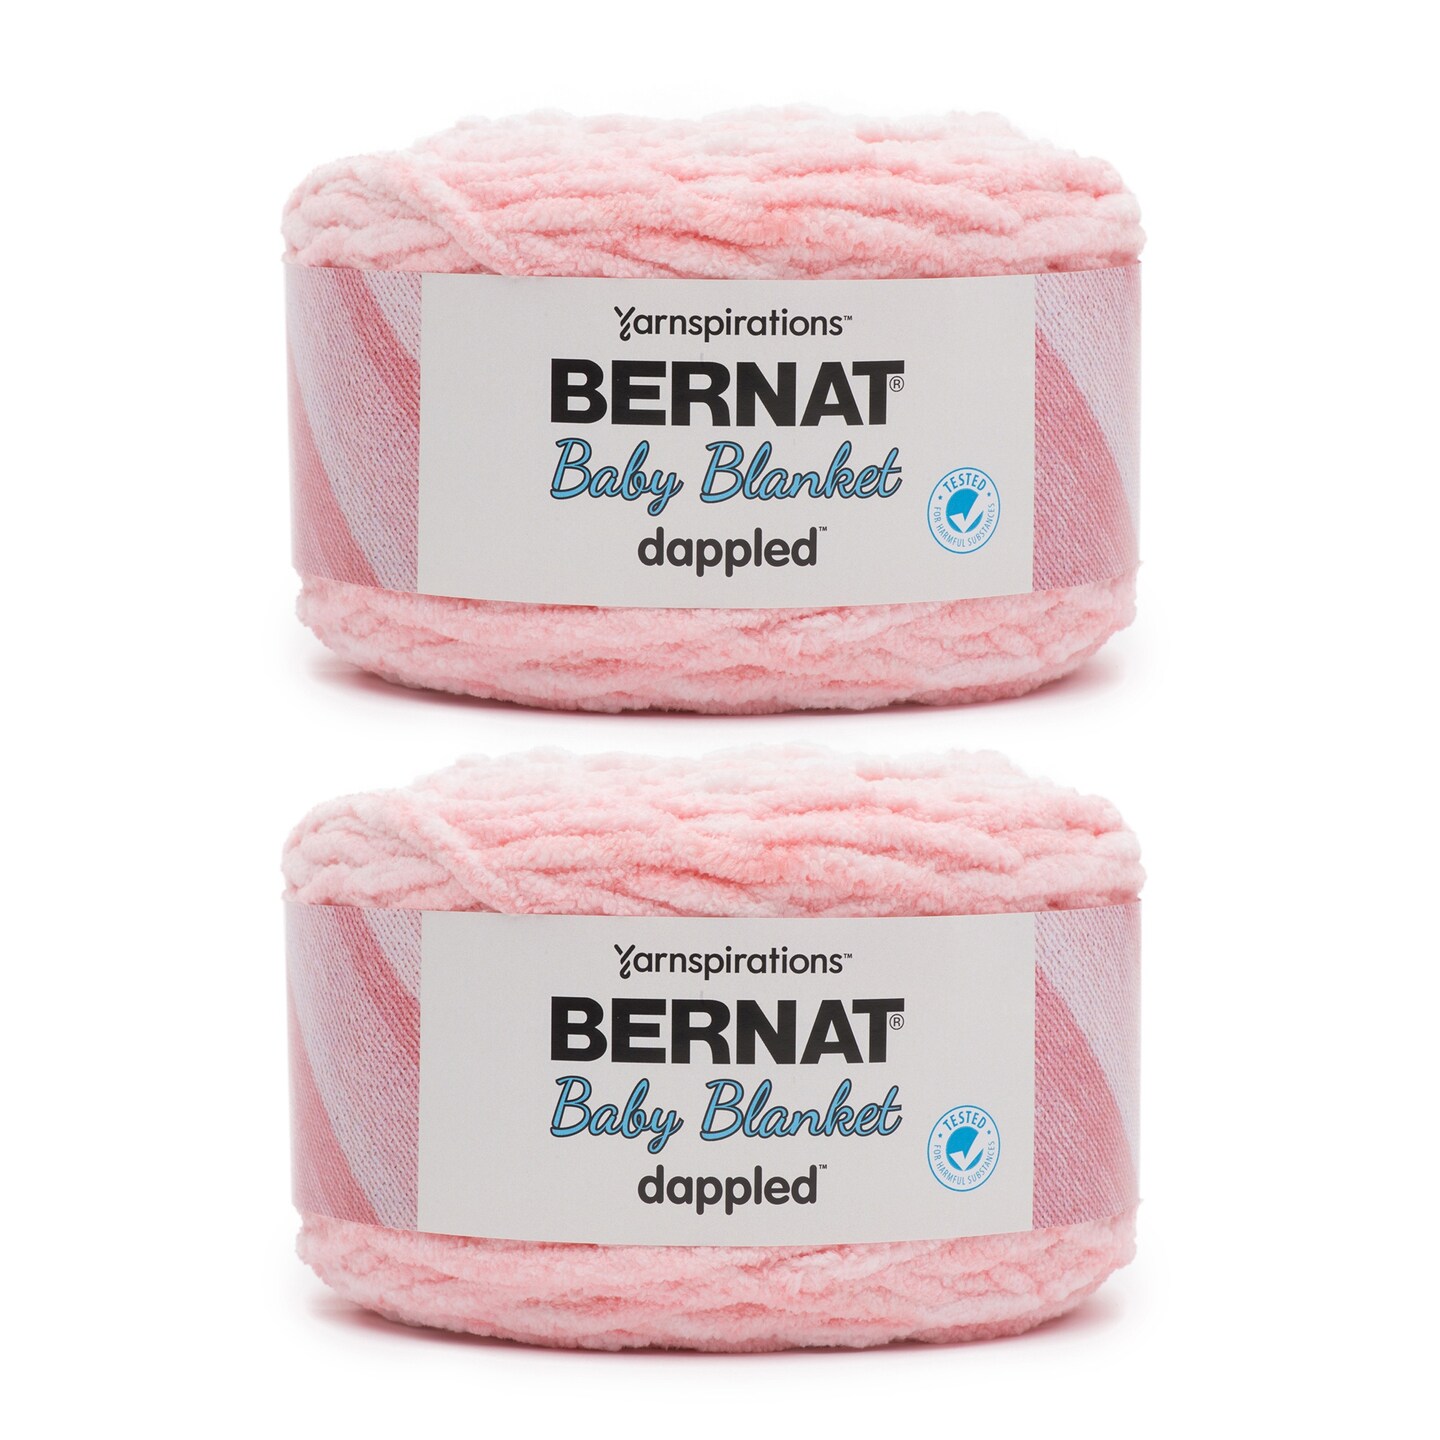 Bernat Baby Blanket Yarn 6-pack - Baby Pink